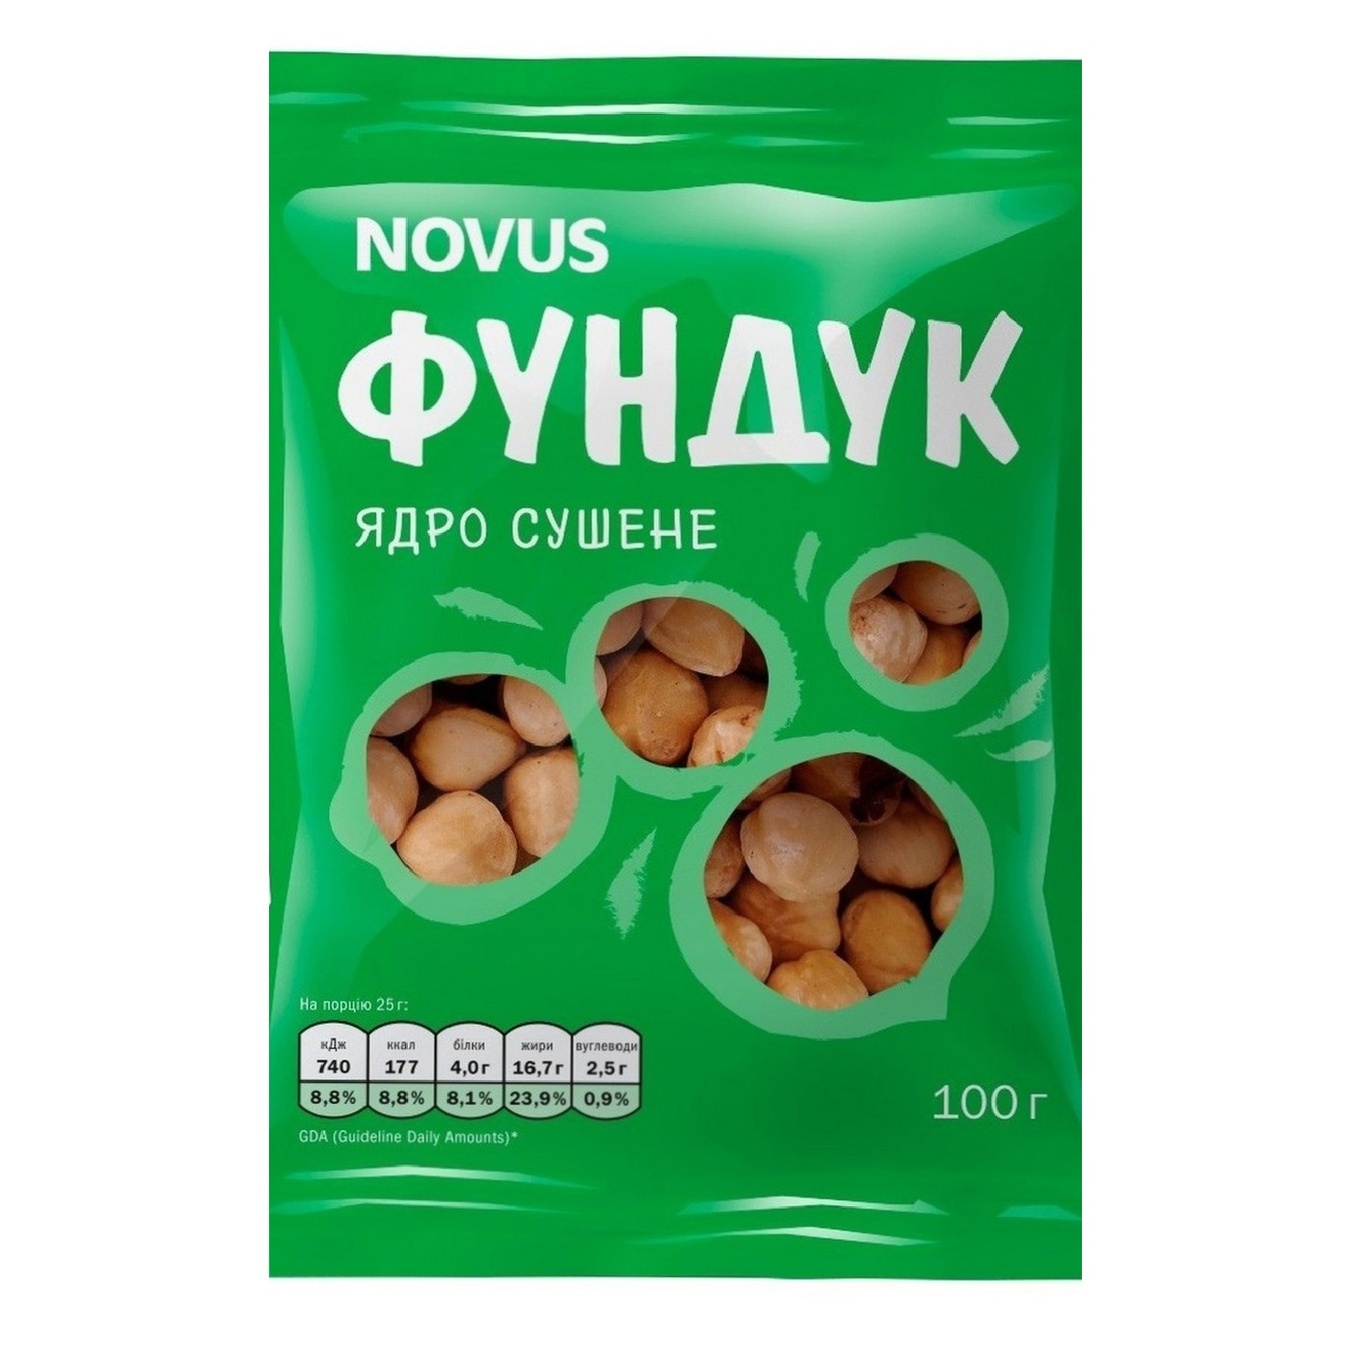 Novus Dried Hazelnut 100g